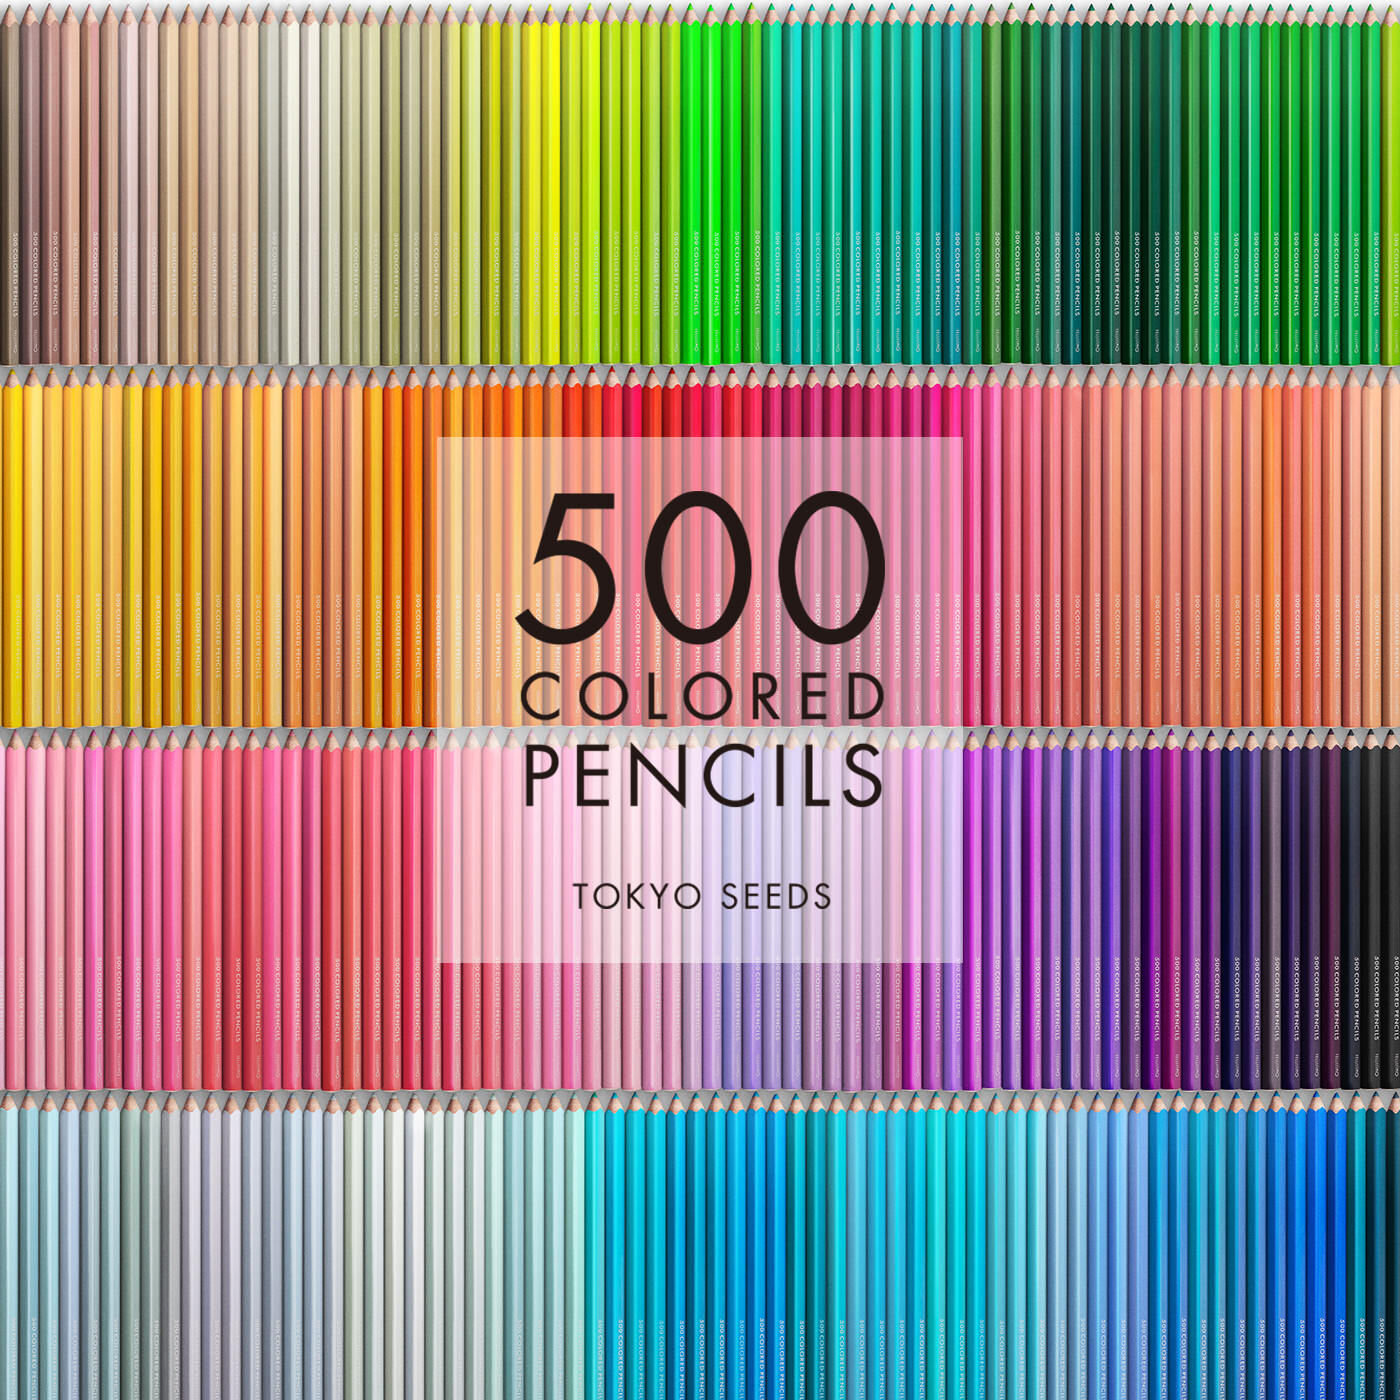 Real Stock|【106/500 SHARPENED PENCIL】500色の色えんぴつ TOKYO SEEDS|1992年、世界初の「500色」という膨大な色数の色えんぴつが誕生して以来、その販売数は発売当初から合わせると、世界55ヵ国10万セット以上。今回、メイド・イン・ジャパンにこだわり、すべてが新しく生まれ変わって登場しました。